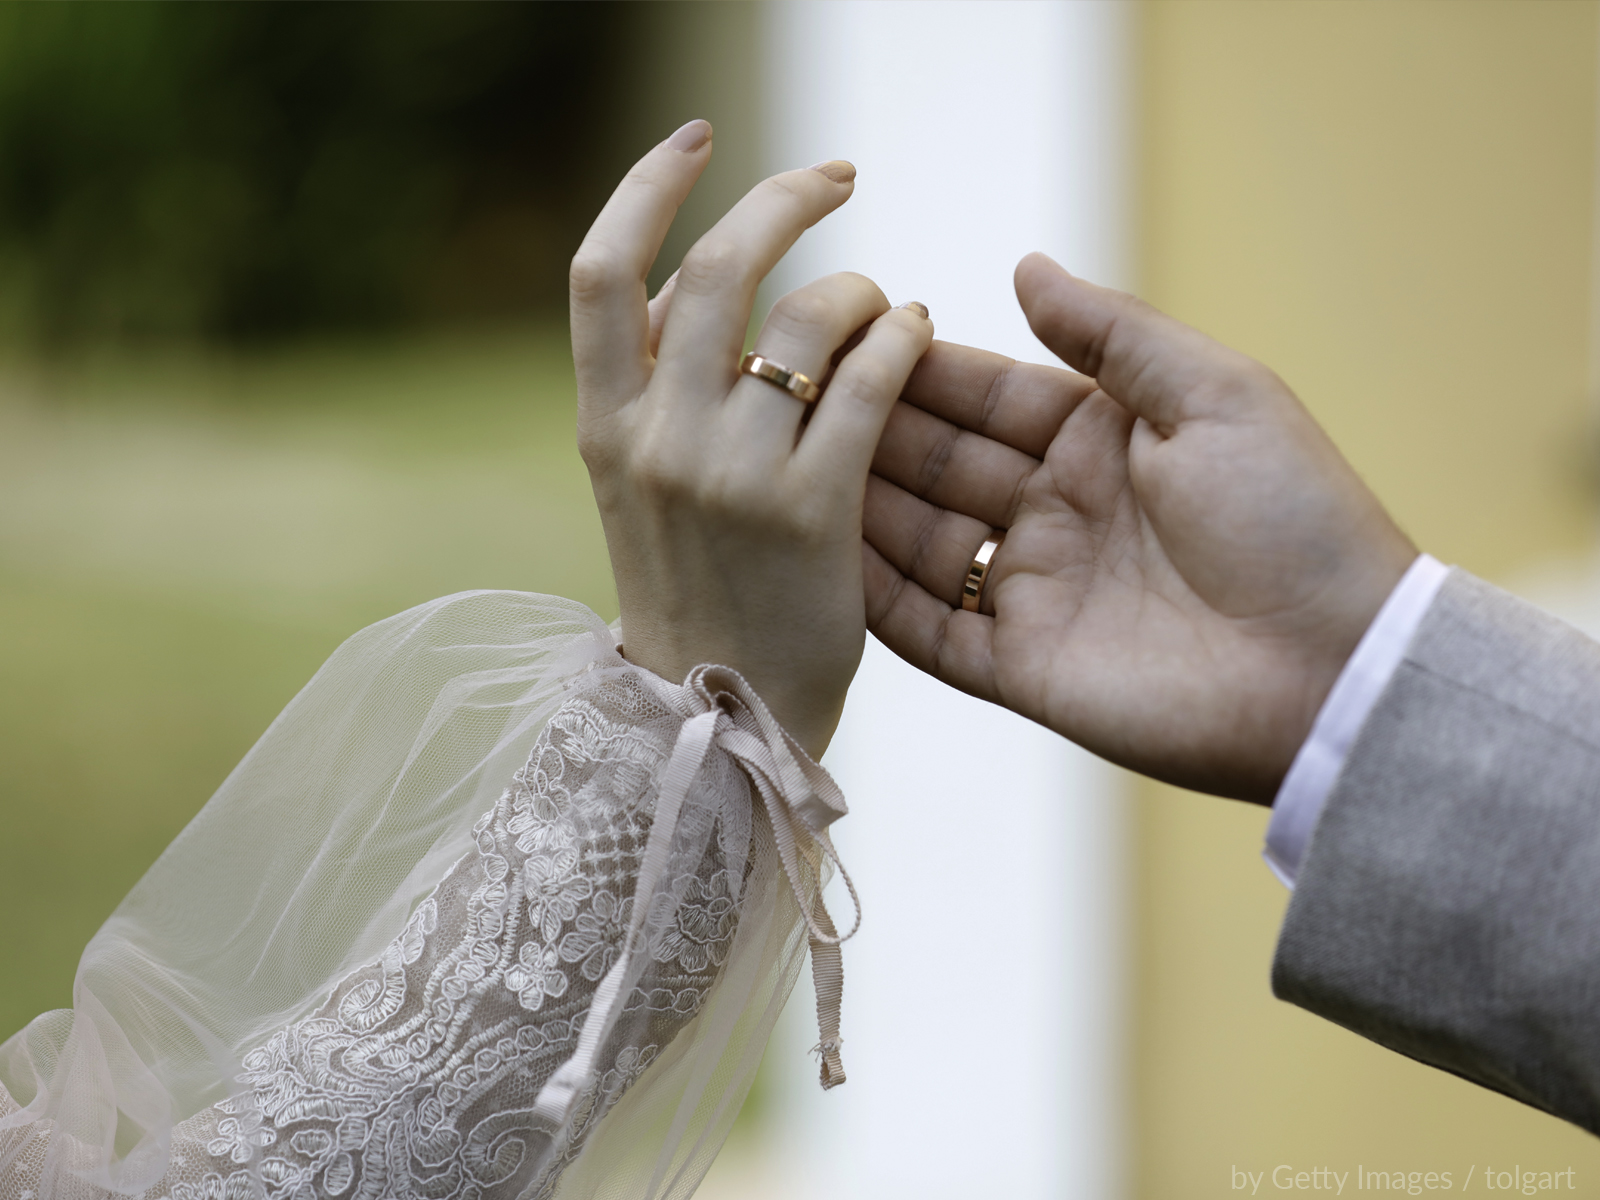 Cartórios de registro civil registram aumento de 143% no número de casamentos no Brasil no mês de setembro